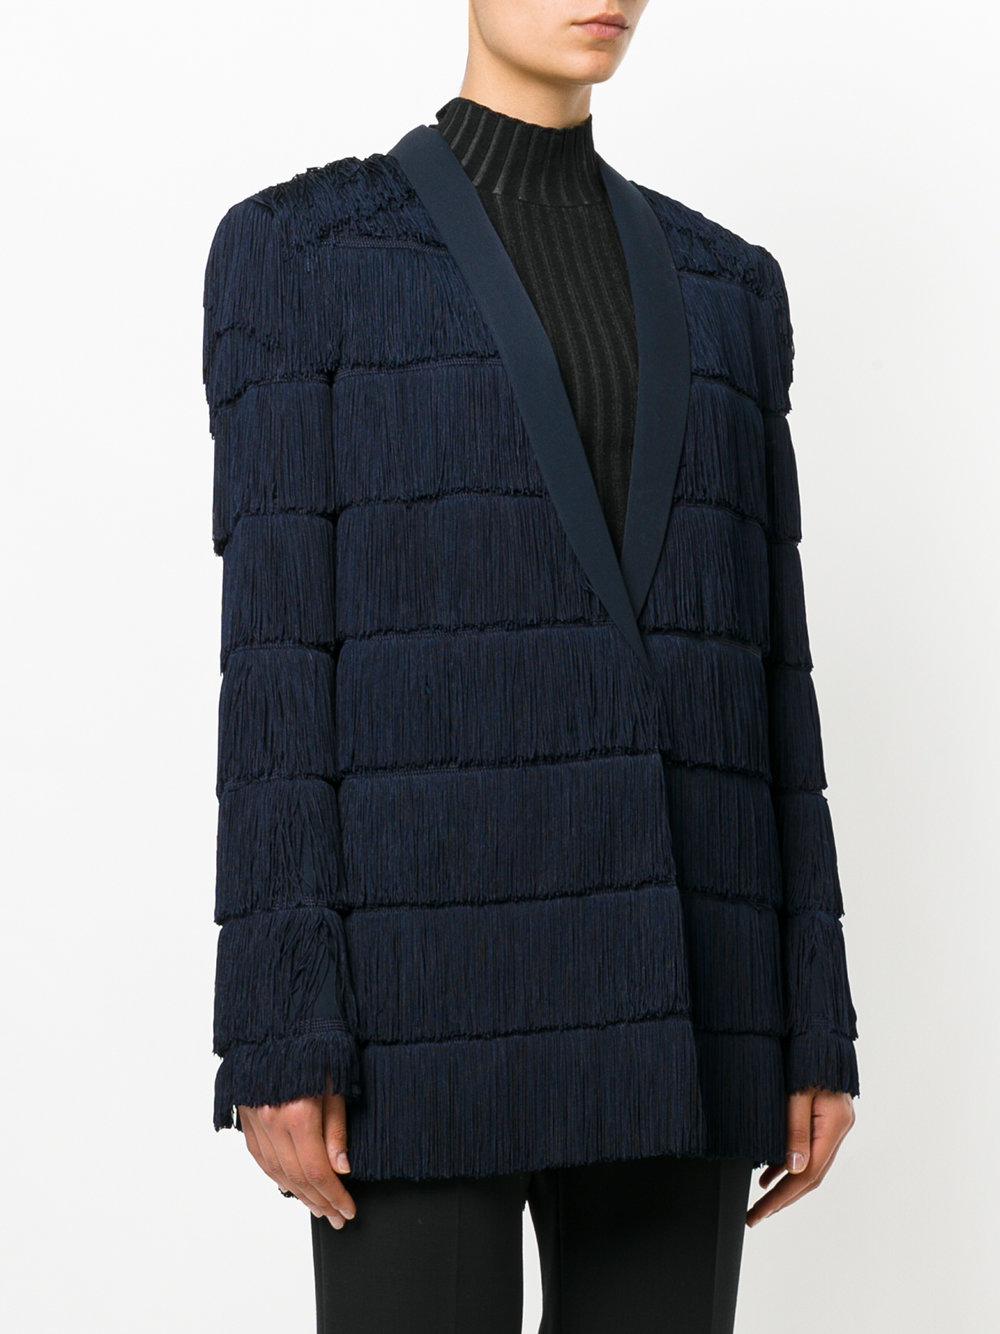 Stella McCartney Wool Fringe-trimmed Tia Jacket in Blue - Lyst